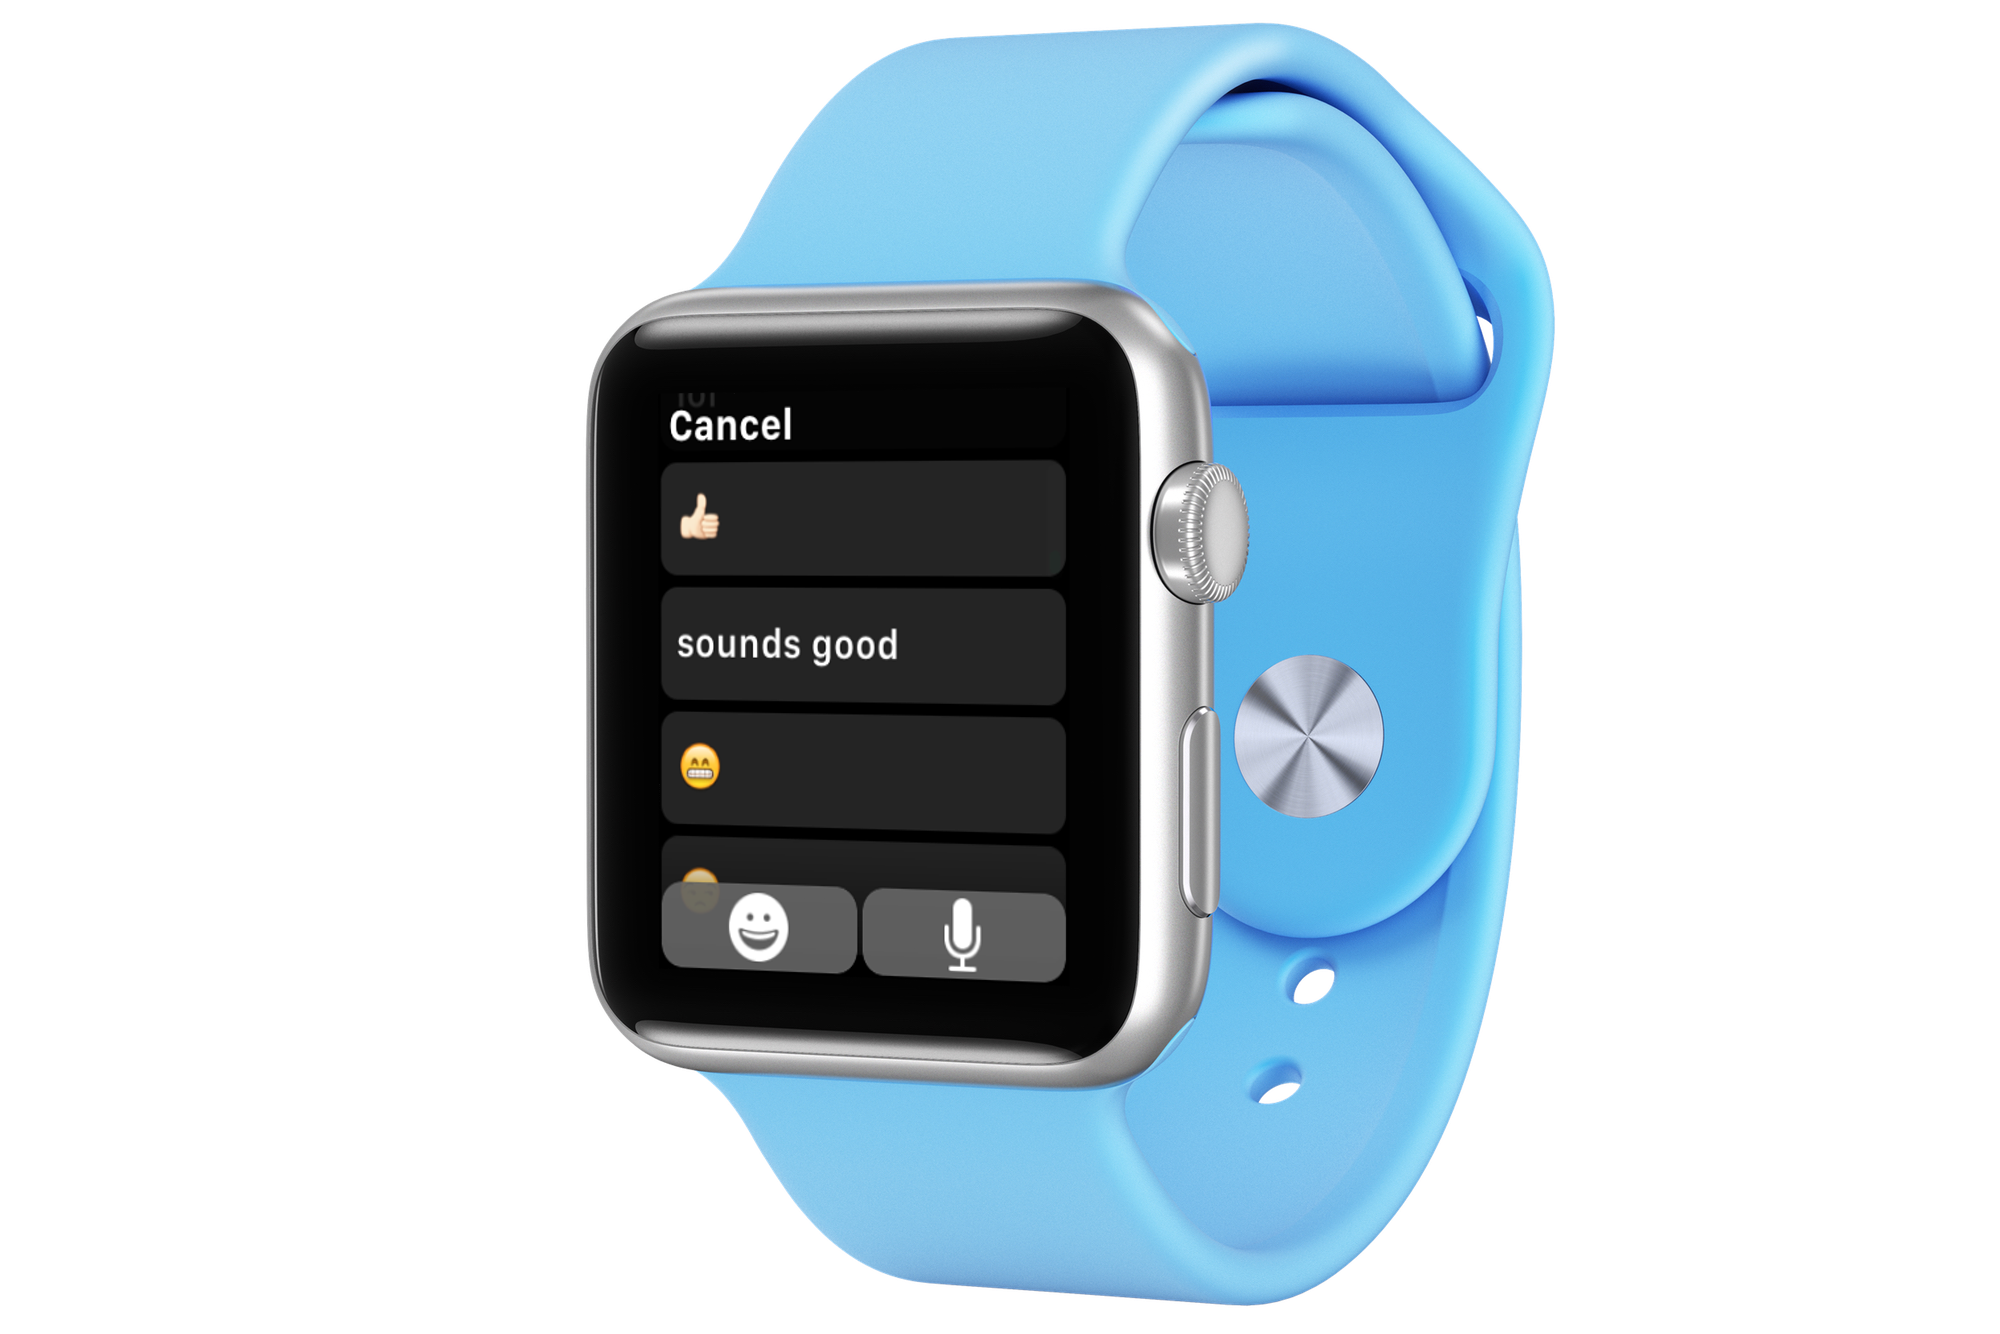 Apple Watch example of default replies